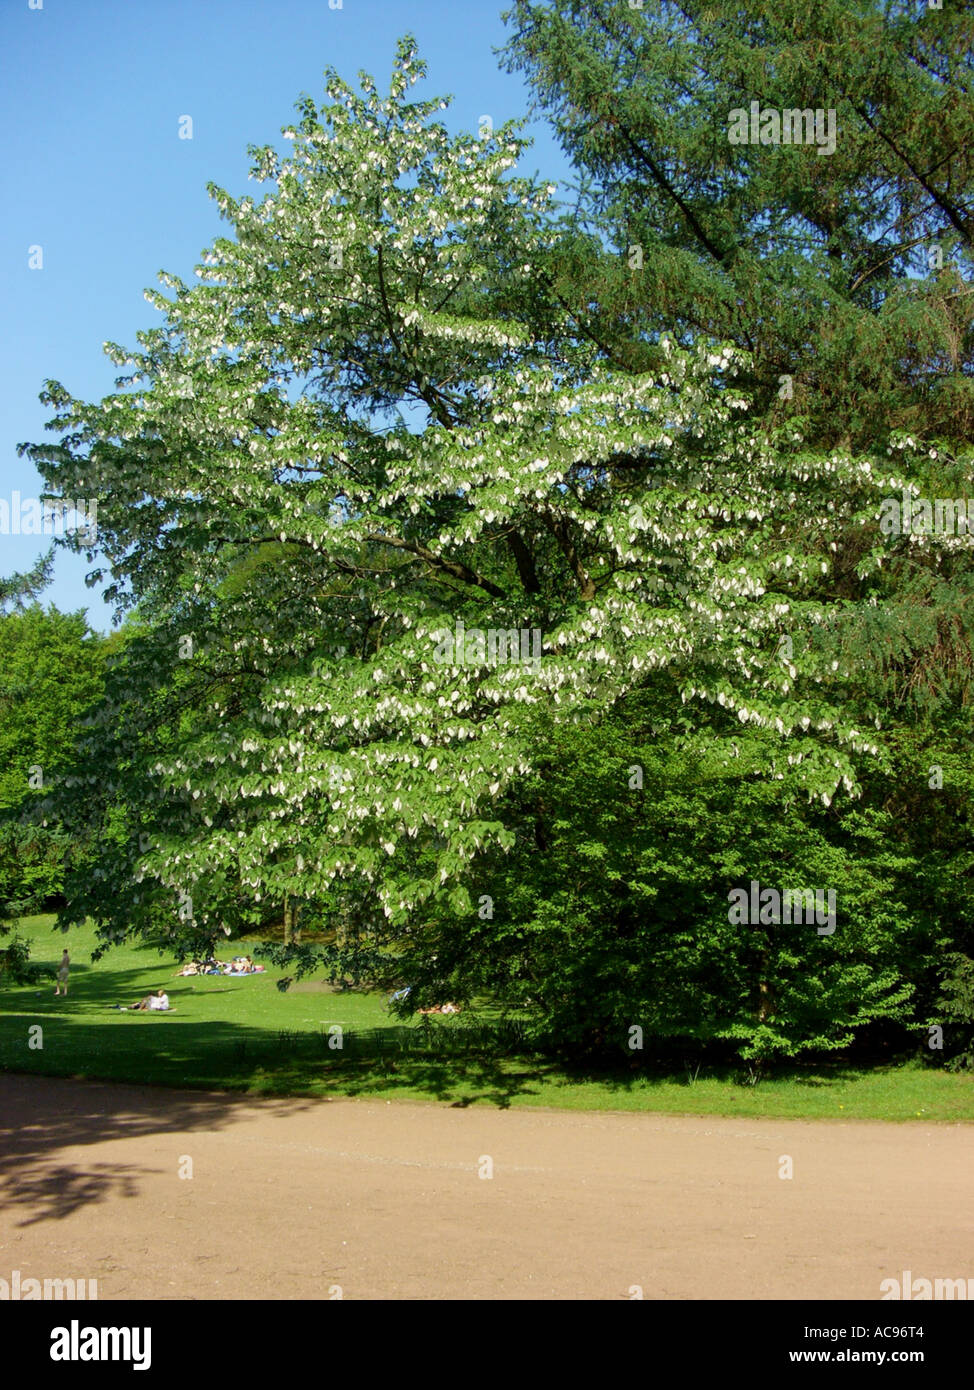 pocket-handkerchief tree (Davidia involucrata), blooming tree in a park Stock Photo